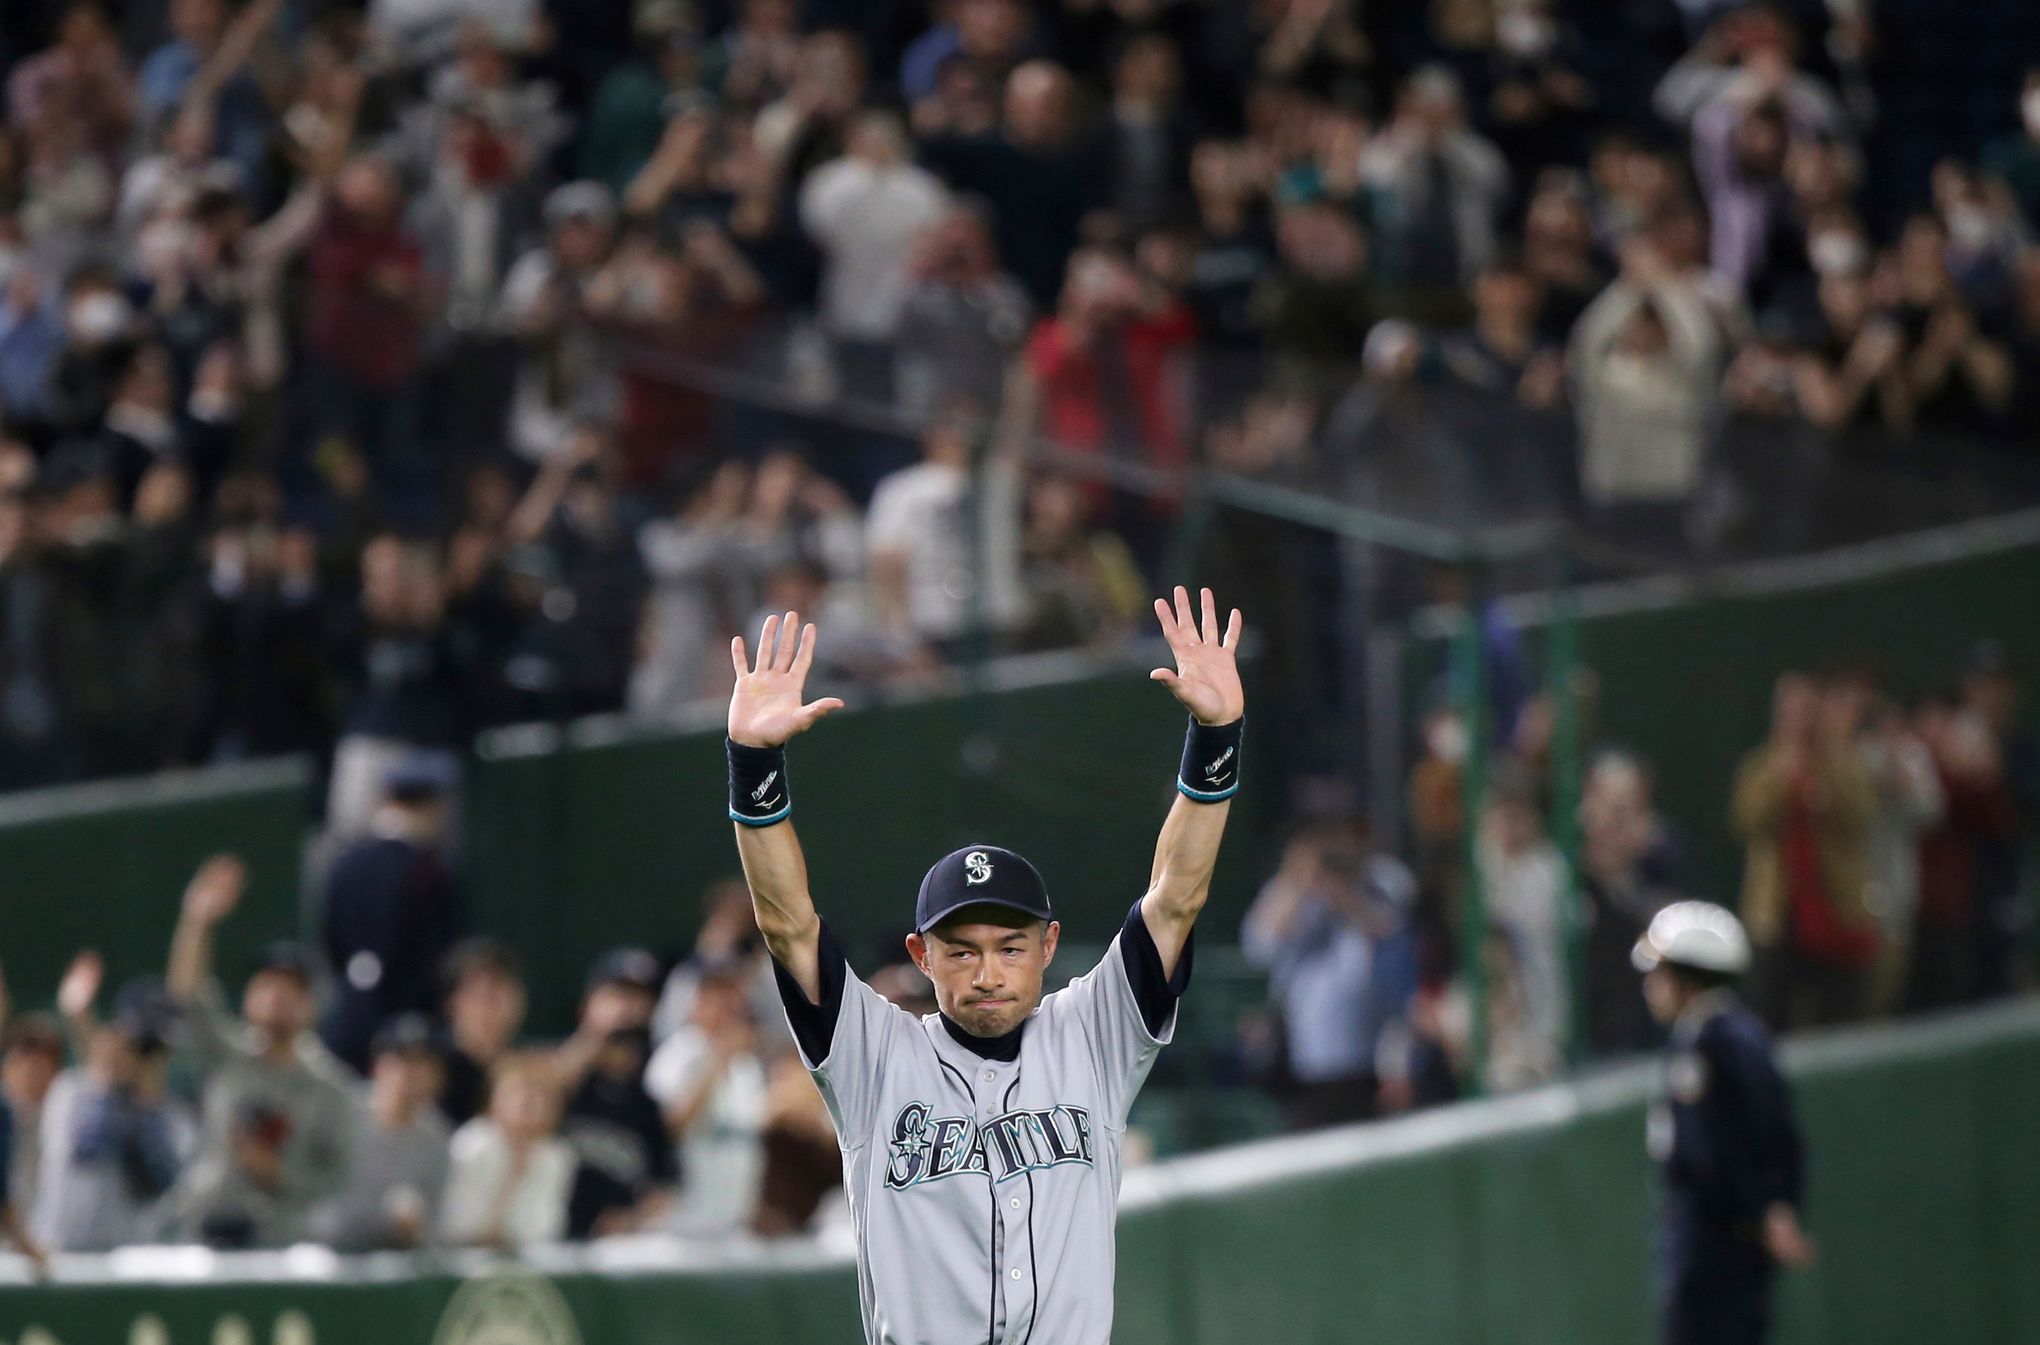 Watch: In Tokyo, retiring Ichiro Suzuki leaves field for final time